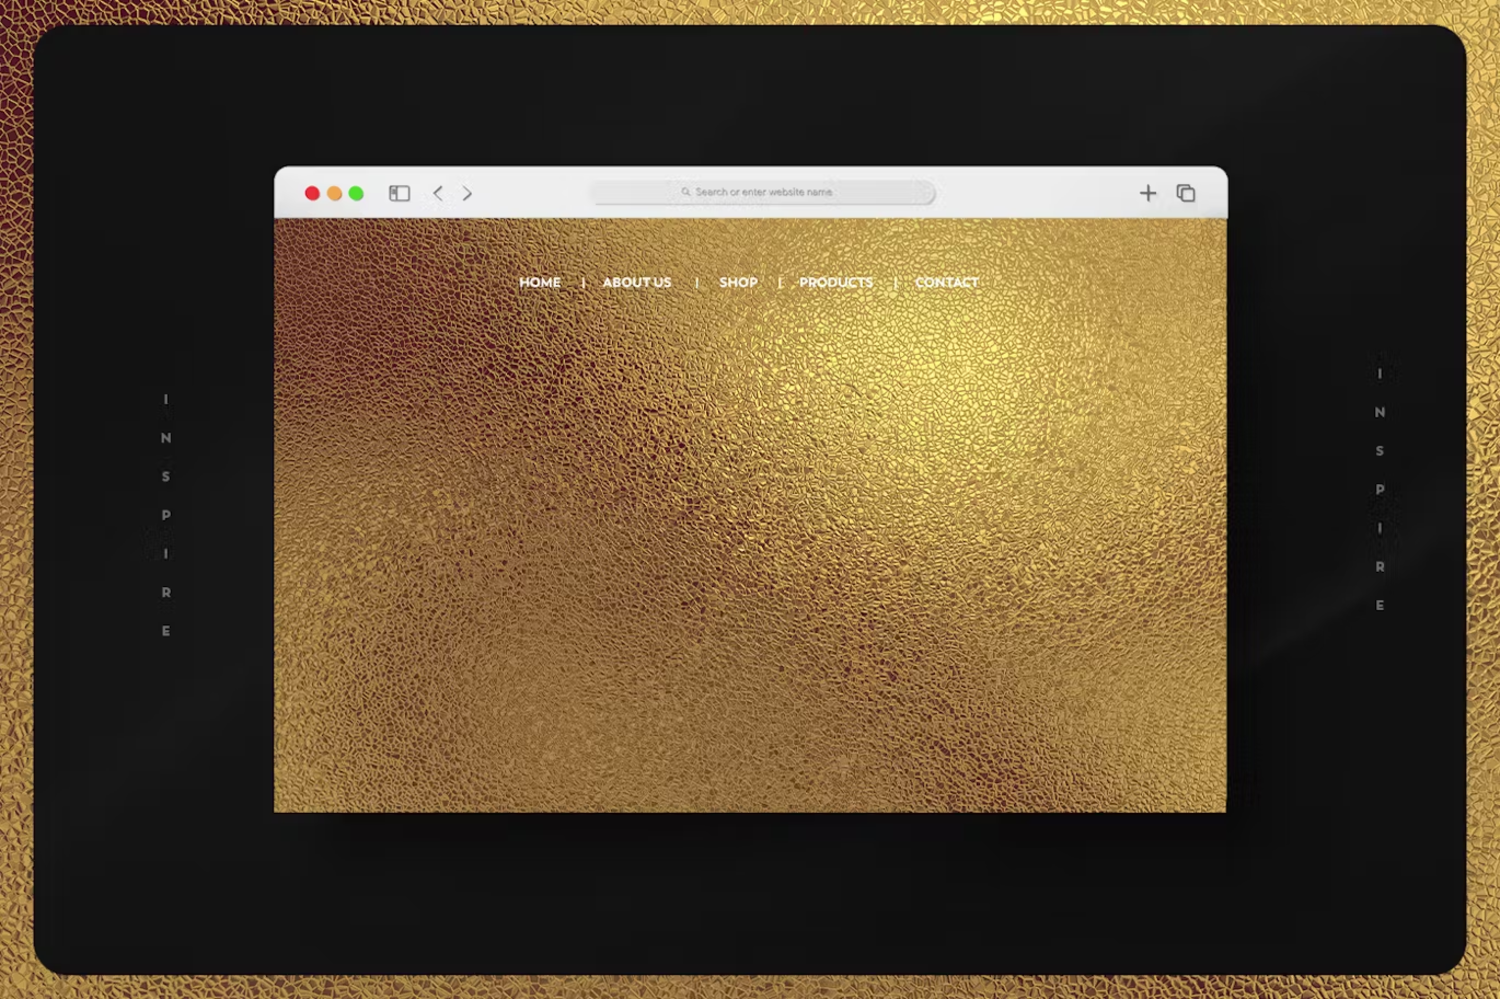 6052 创意高级金色抽象Voronoi纹理背景设计展示素材-Gold & Silver Abstract Voronoi Texture Backgrounds